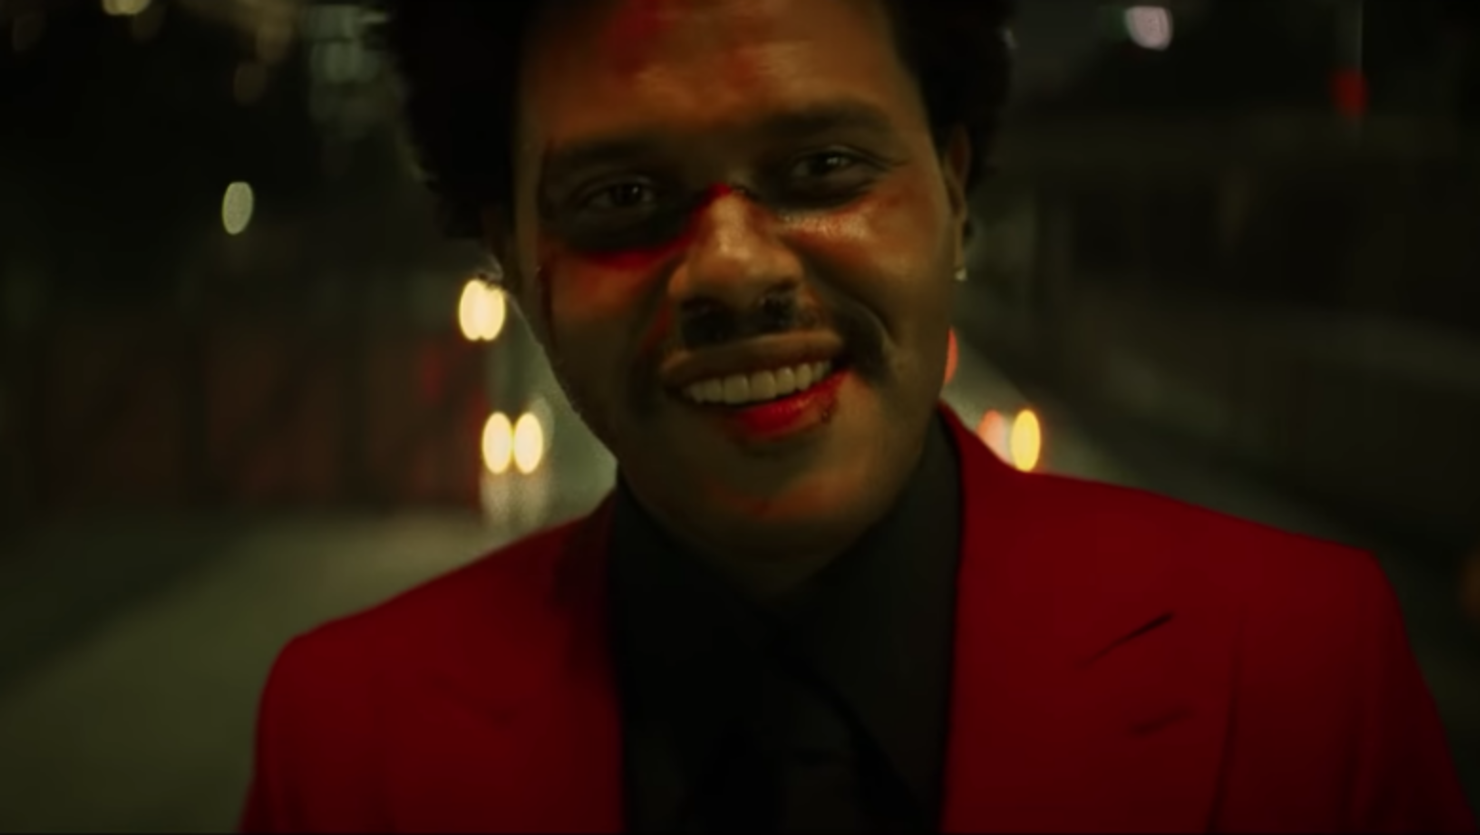 Через 1 песню. The Weeknd Blinding Lights. Weeknd 2020 Blinding Lights. The Weeknd Blinding Lights обложка. Певец де викенд.